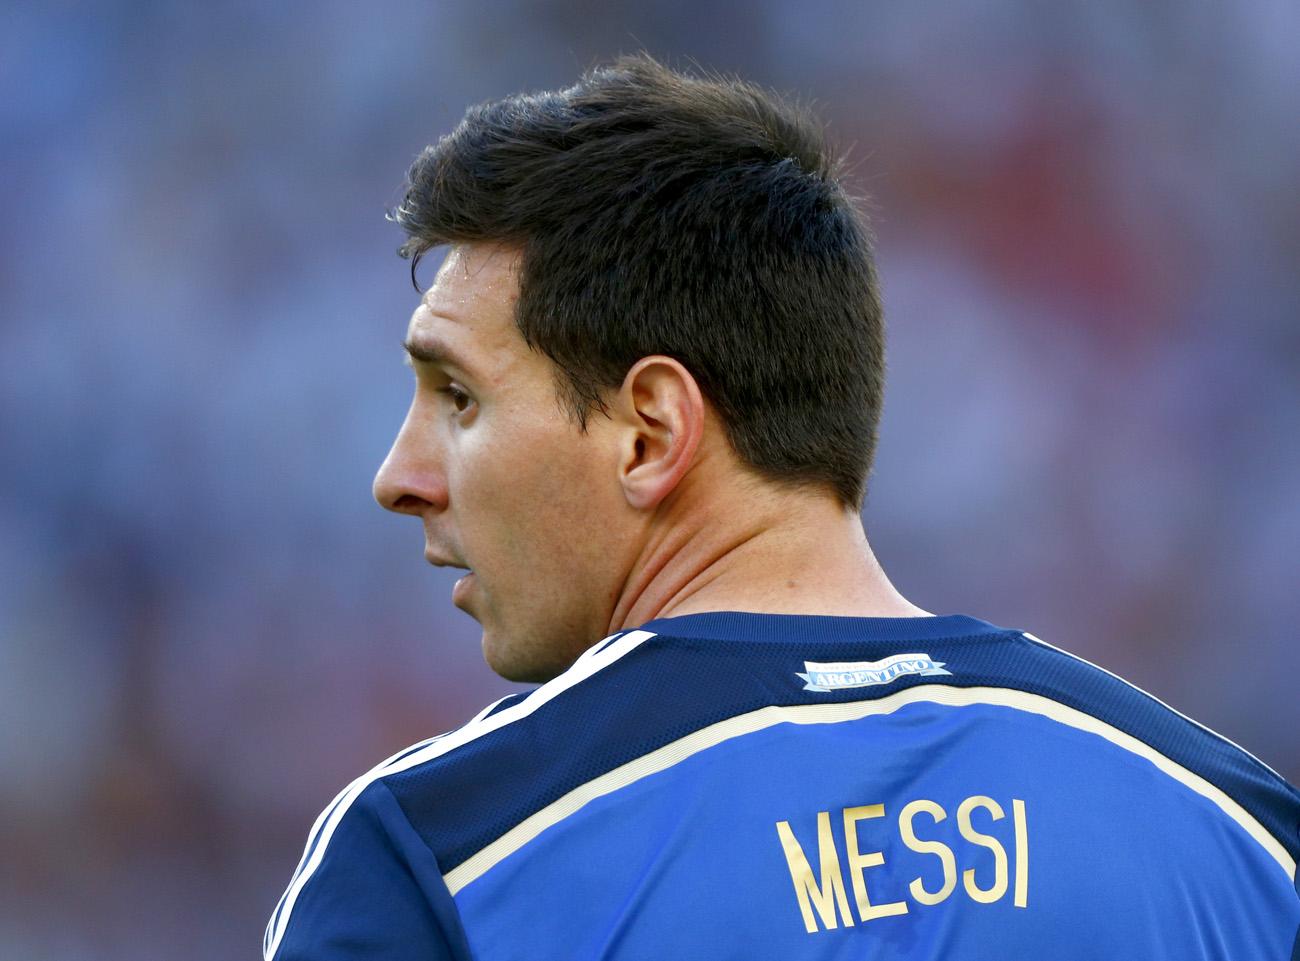 Lionel Messi jelenleg az egyik legnagyobb sztár Argentínában